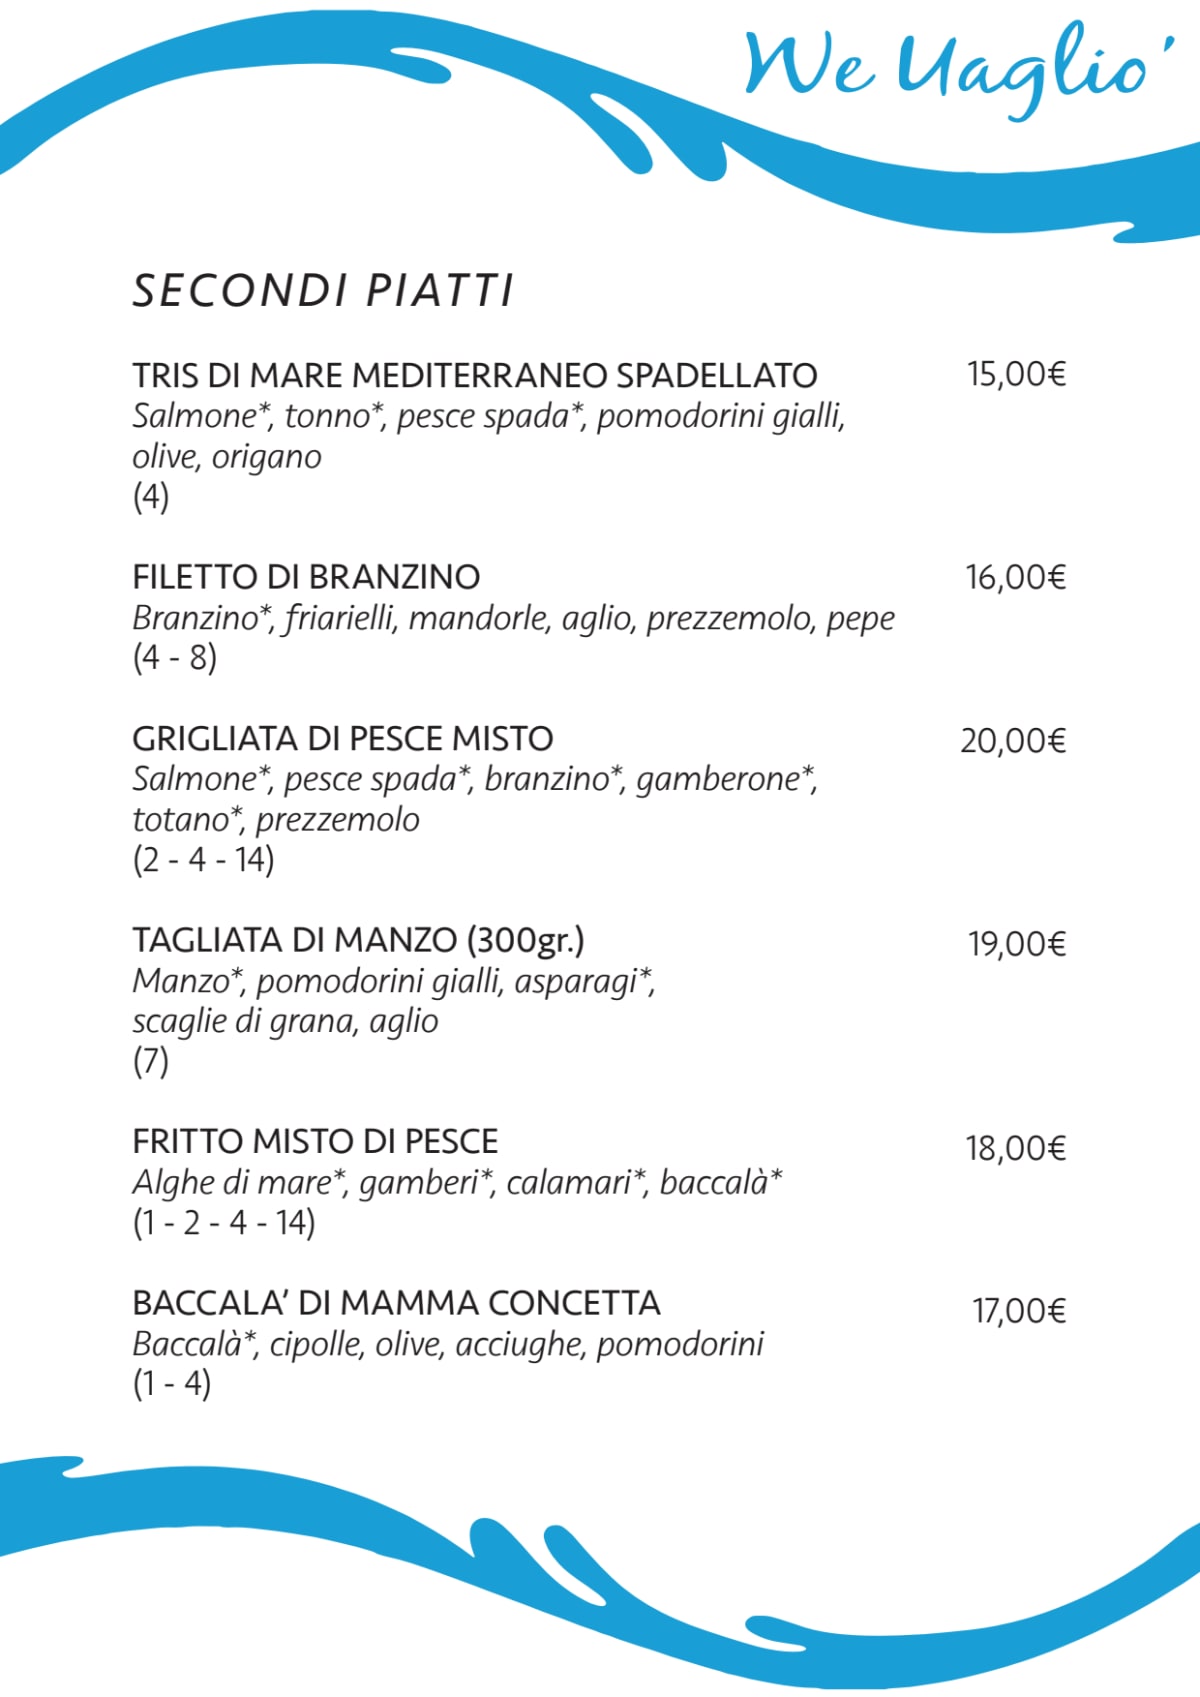 We Uagliò - Primaticcio menu